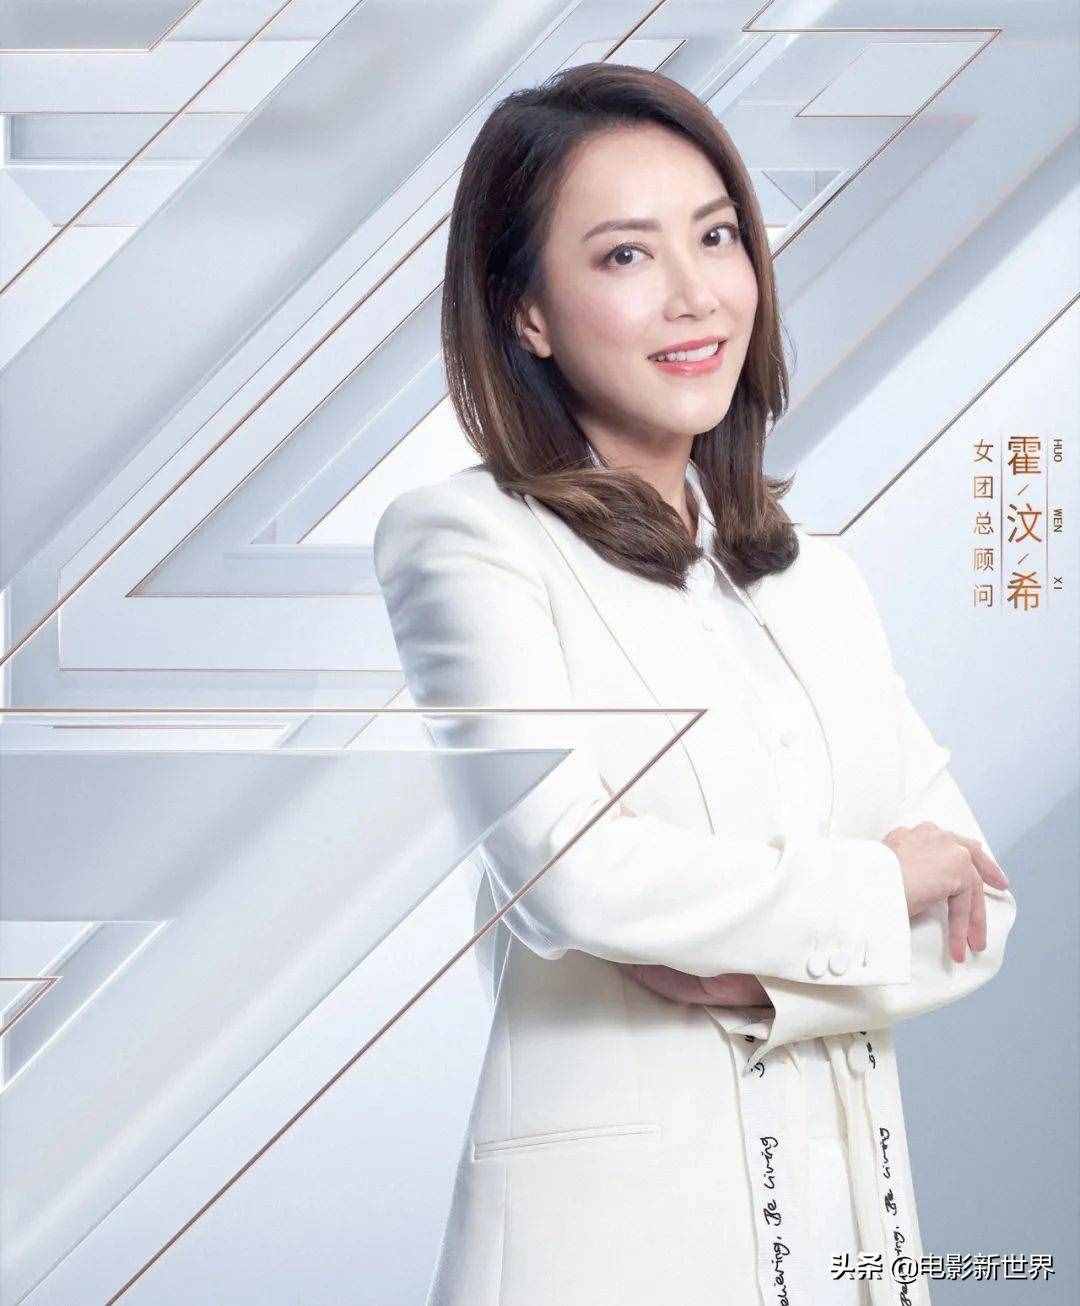 华语娱乐圈的江湖版图：大经纪公司林立，明星个人工作室遍地开花